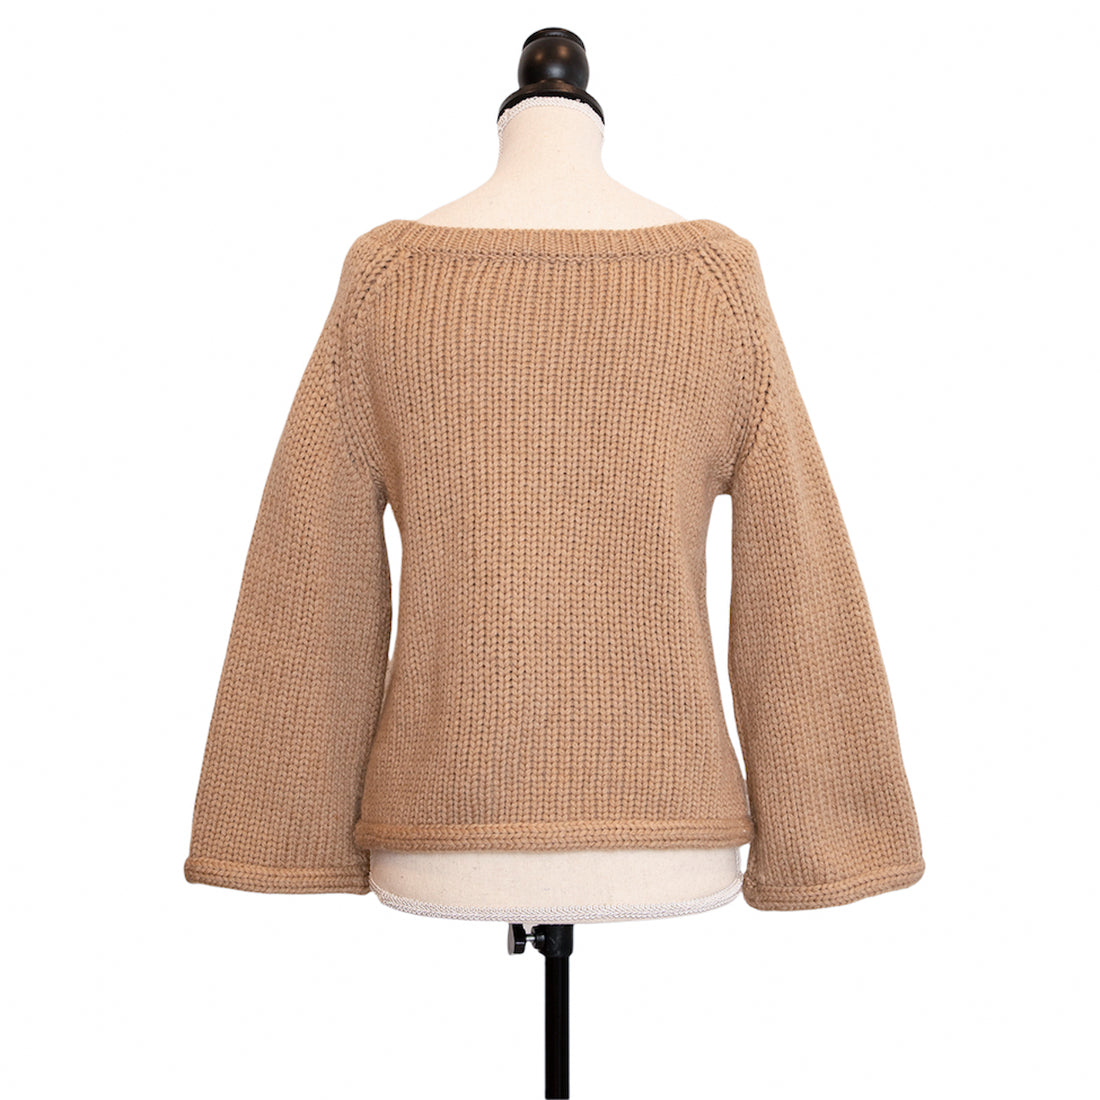 Dorothee Schumacher sweater in a crop top look